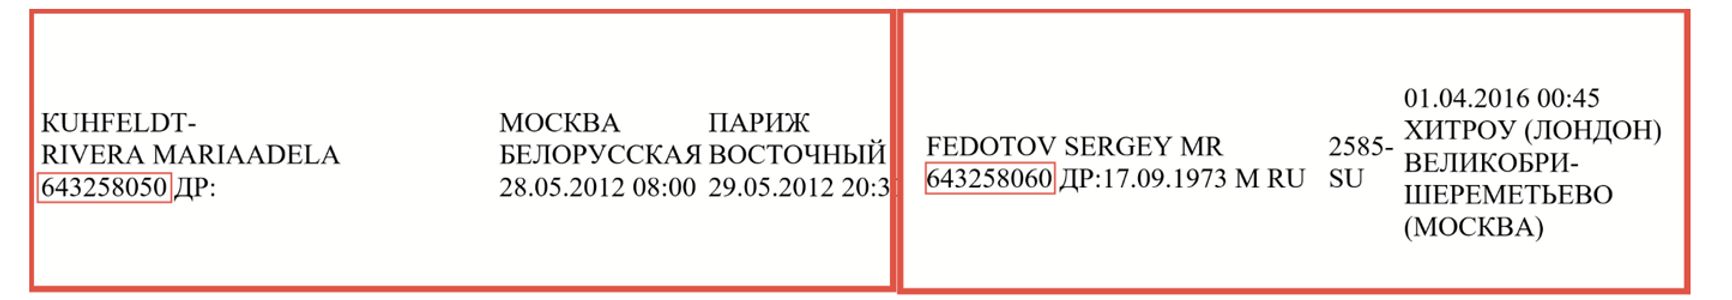 Сравнение паспортных данных «Марии Аделы Риверы Куфельдт» (слева) и Сергея Федетова (справа)